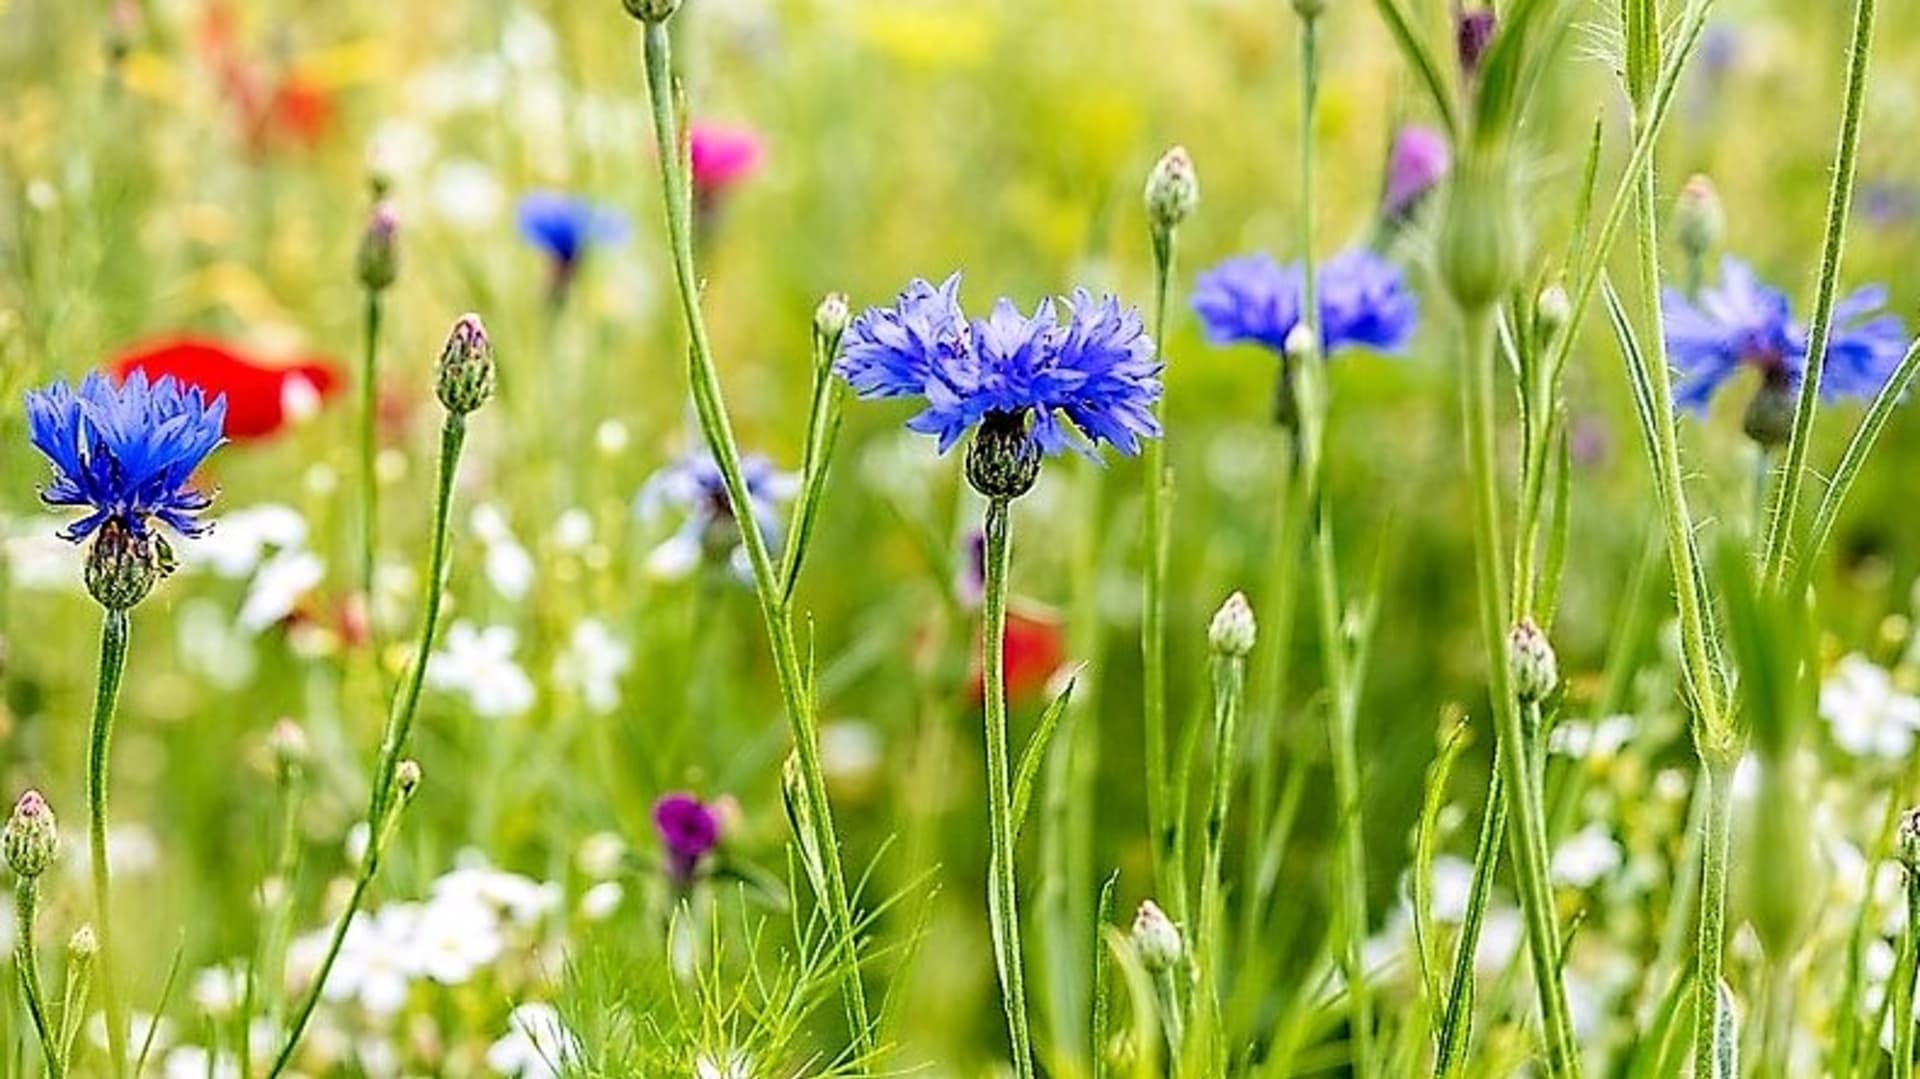 Chrpa polní nebo modrá (Centaurea cyanus) je rozšířená luční bylina s krásnými sytě tmavě modré až fialové květy květy, která většinou roste spolu s vlčím mákem. 